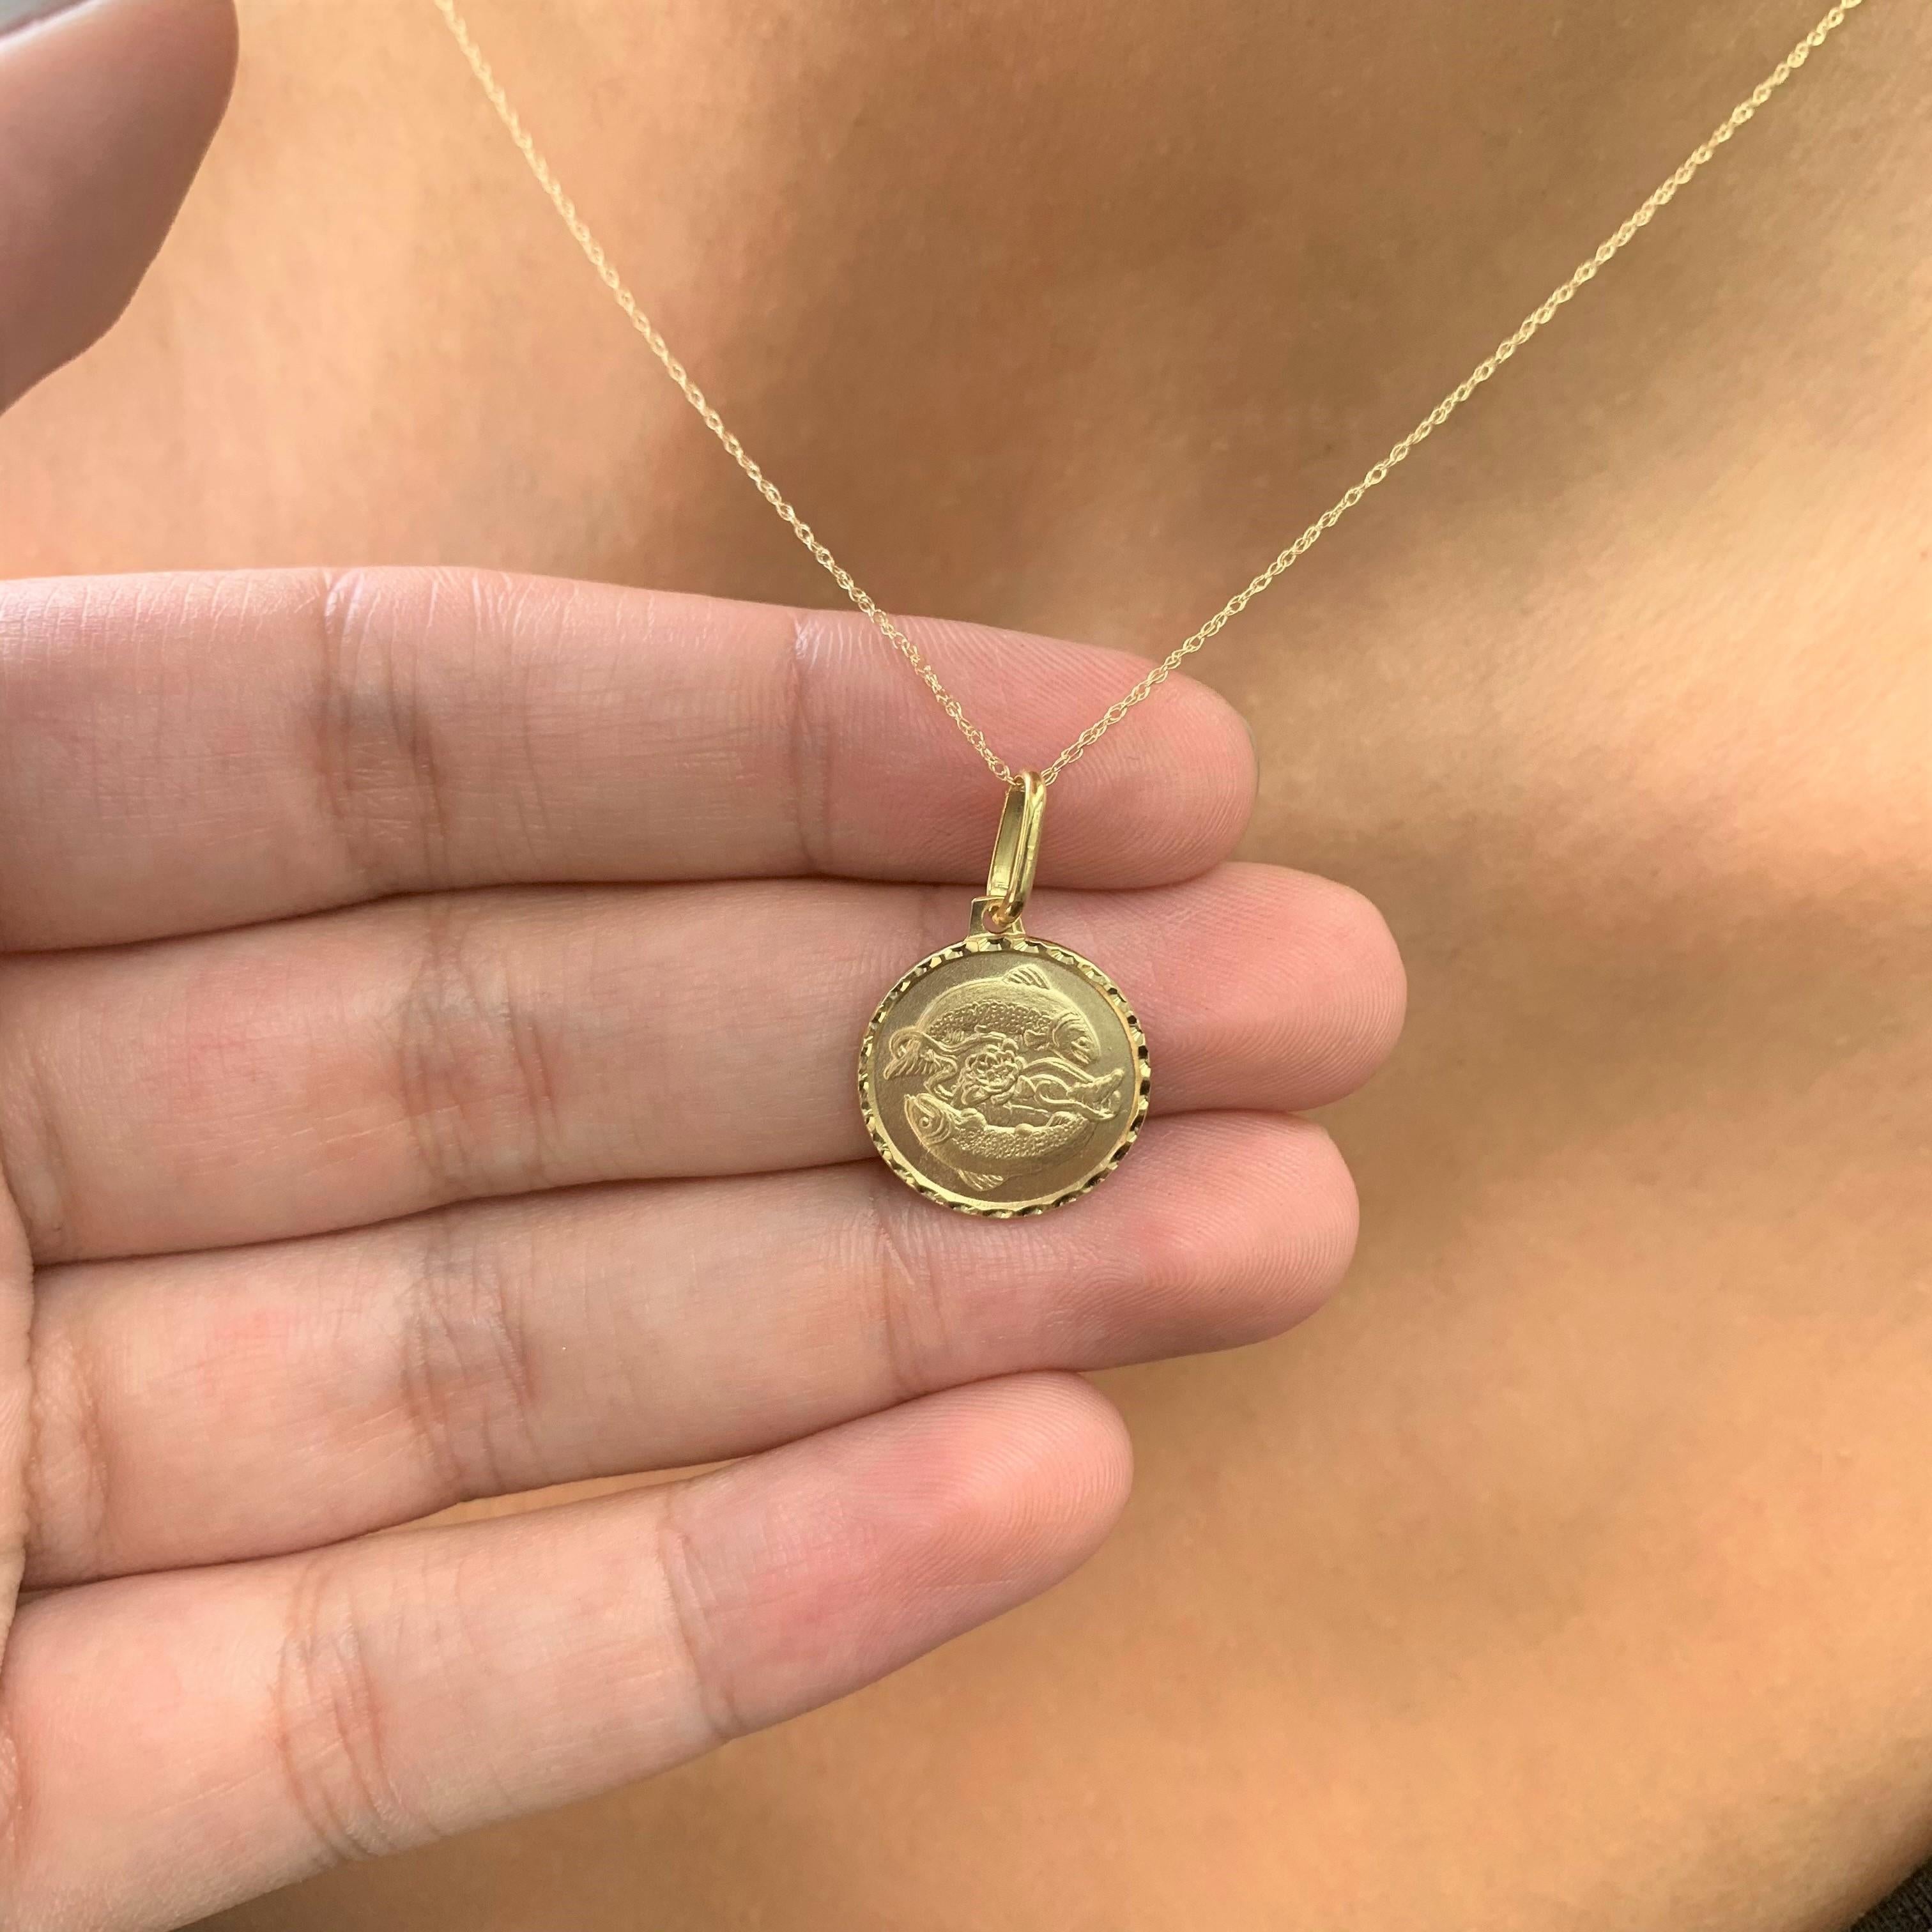 virgo medallion necklace